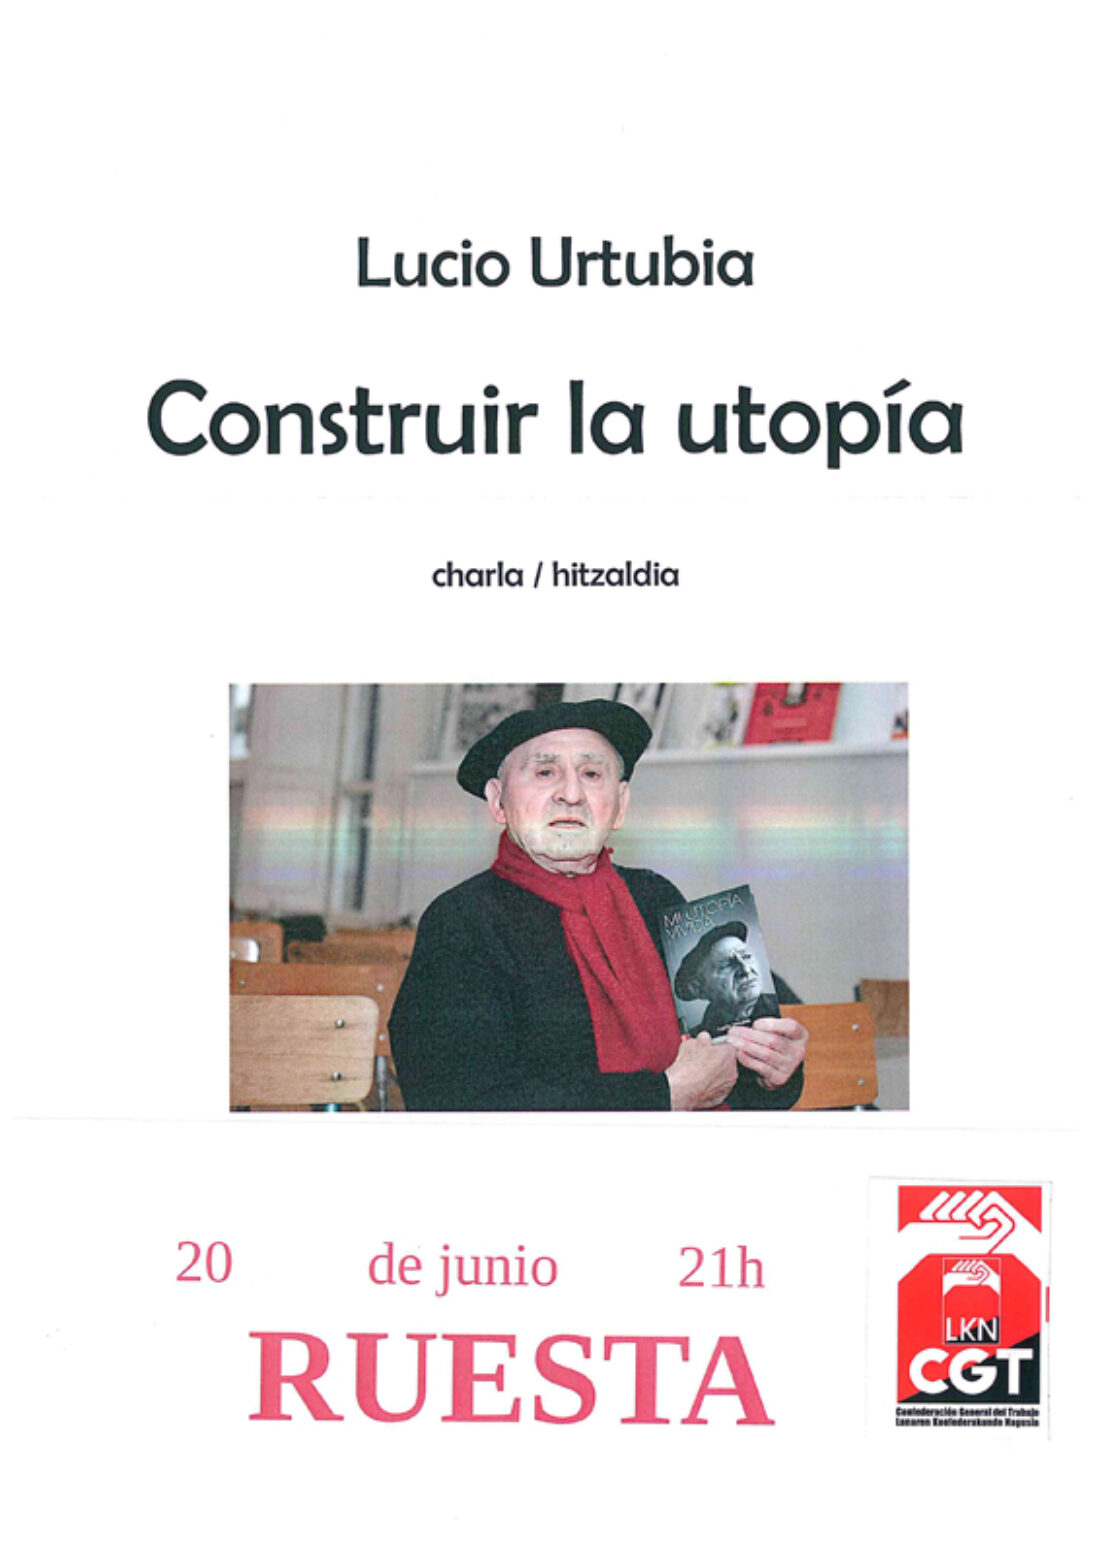 «Construir la utopía»: Charla de Lucio Urtubia en Ruesta